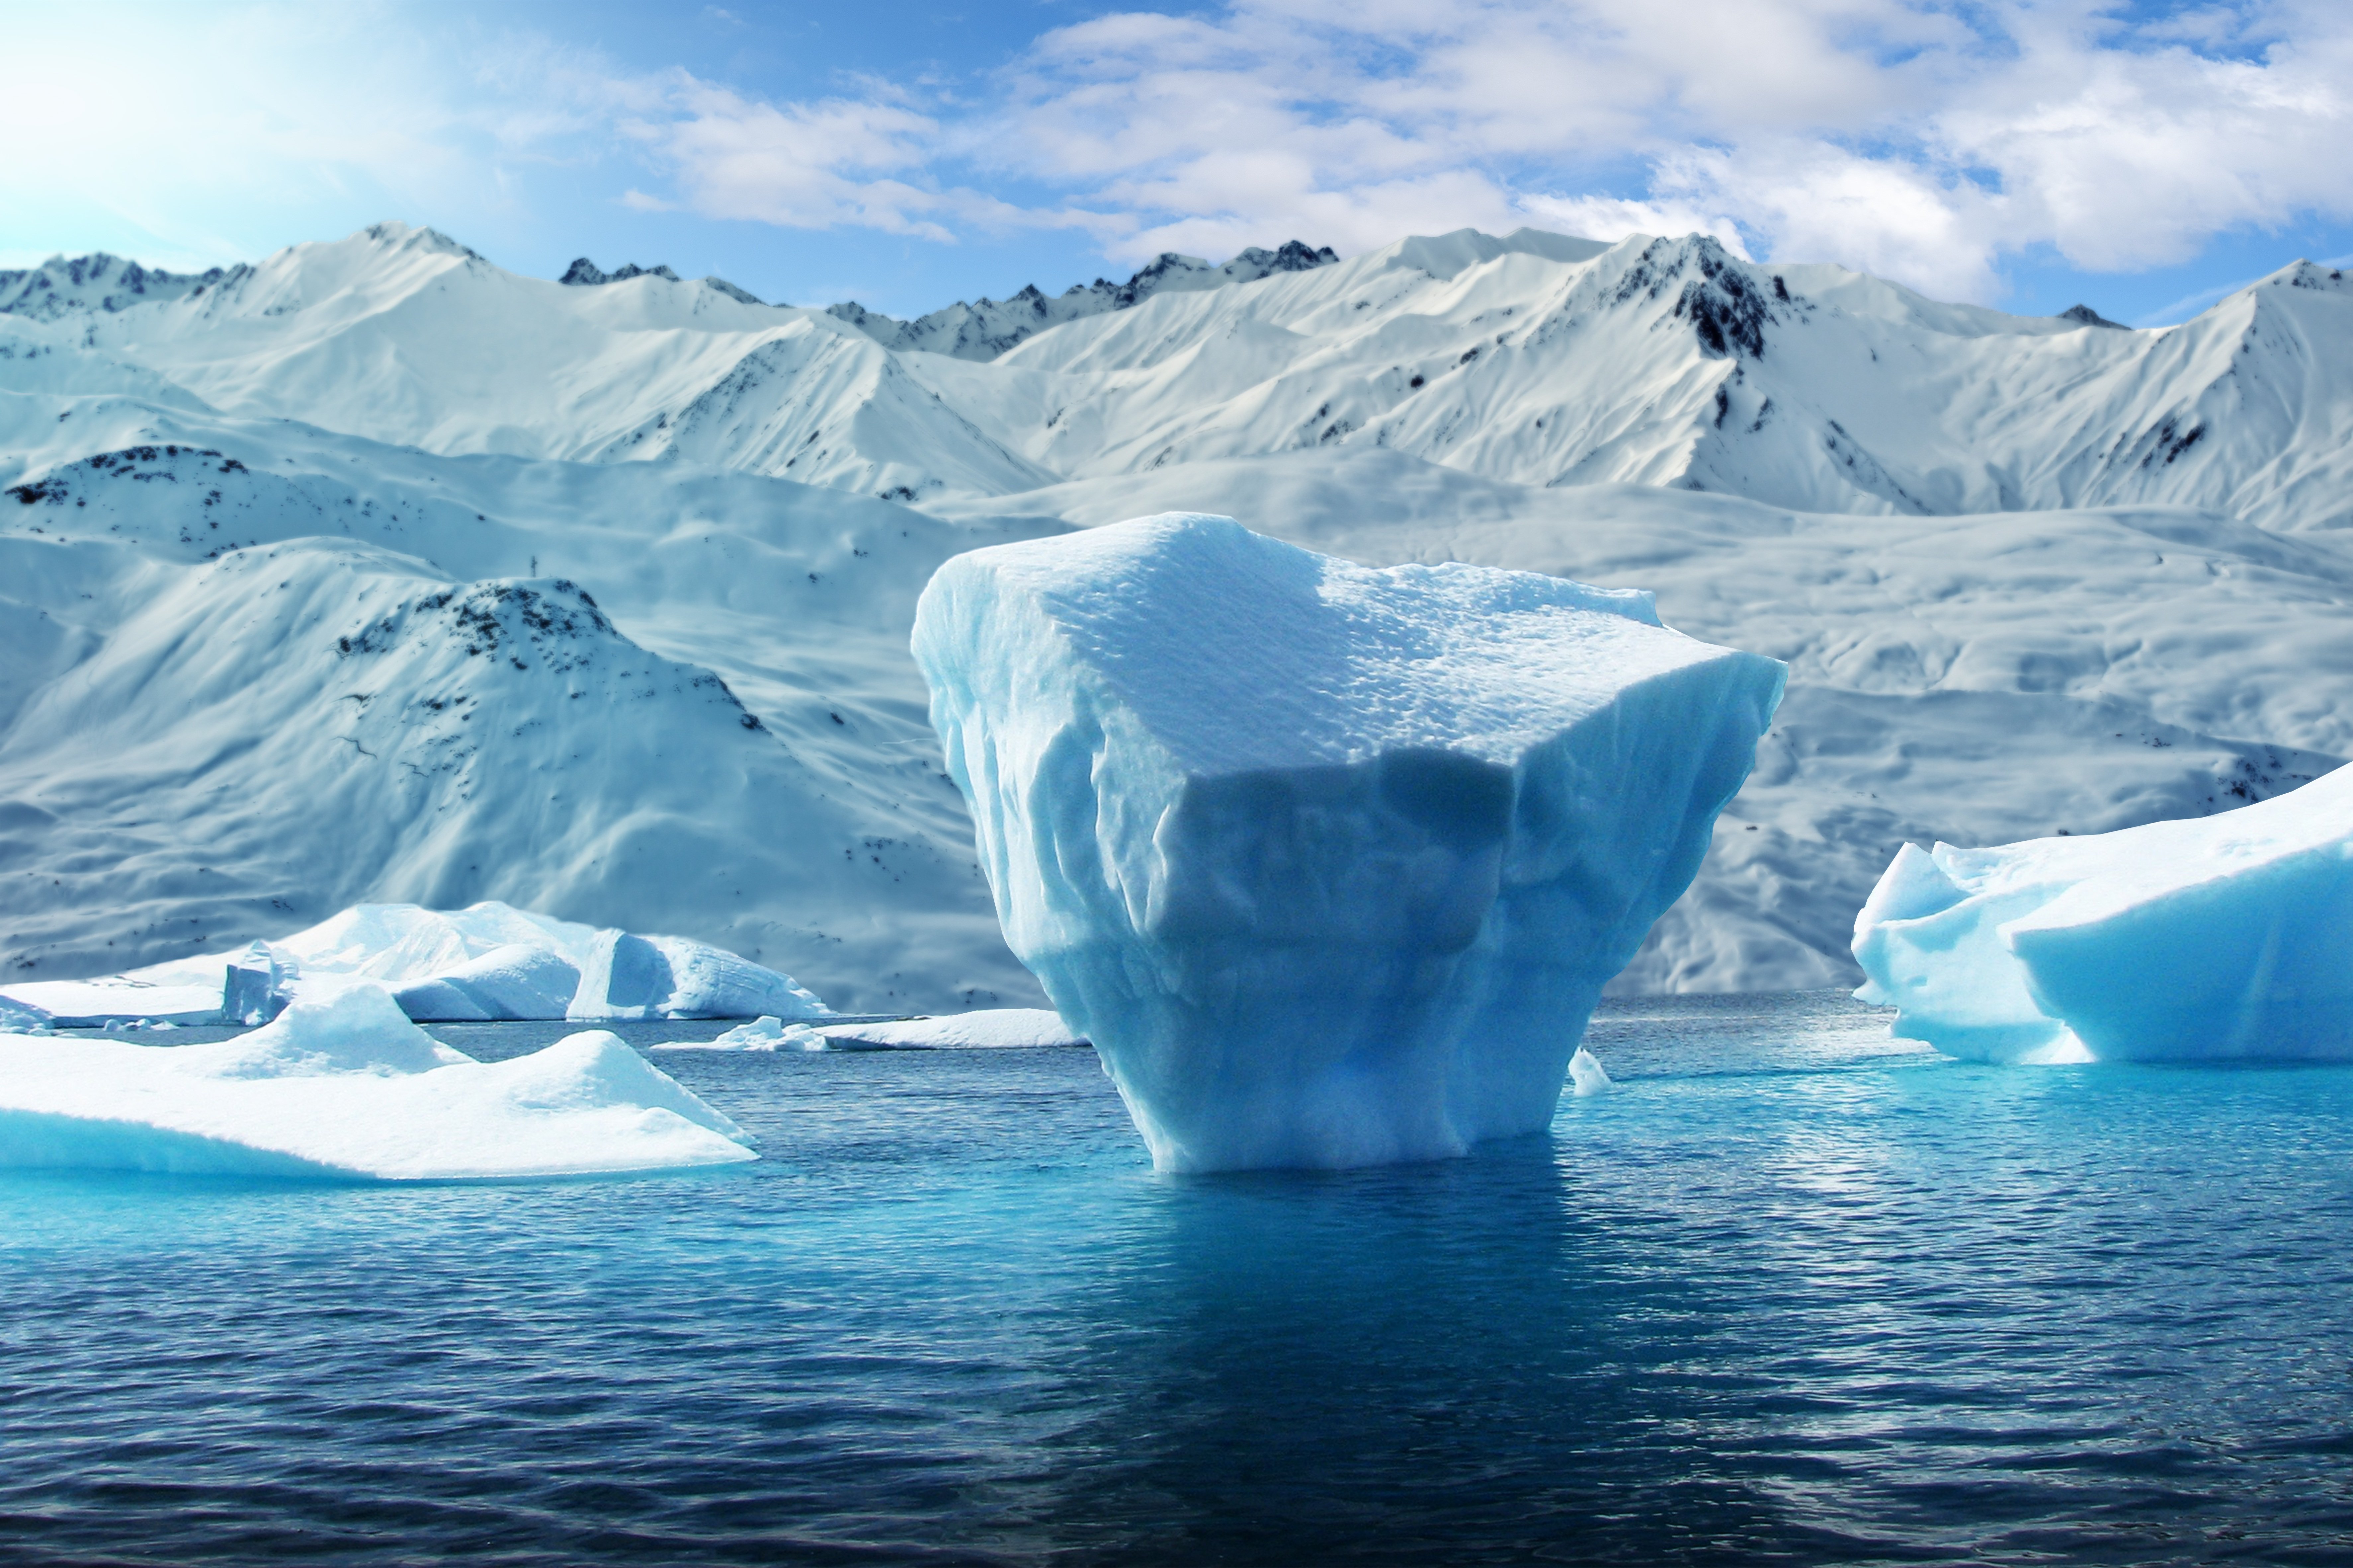 Крупнейшее антарктическое. Гренландия ледник эймери. Антарктида Гренландия Арктика Северный Ледовитый океан. Полярный (Арктический и антарктический) климат. Лед Айсберг Арктика.